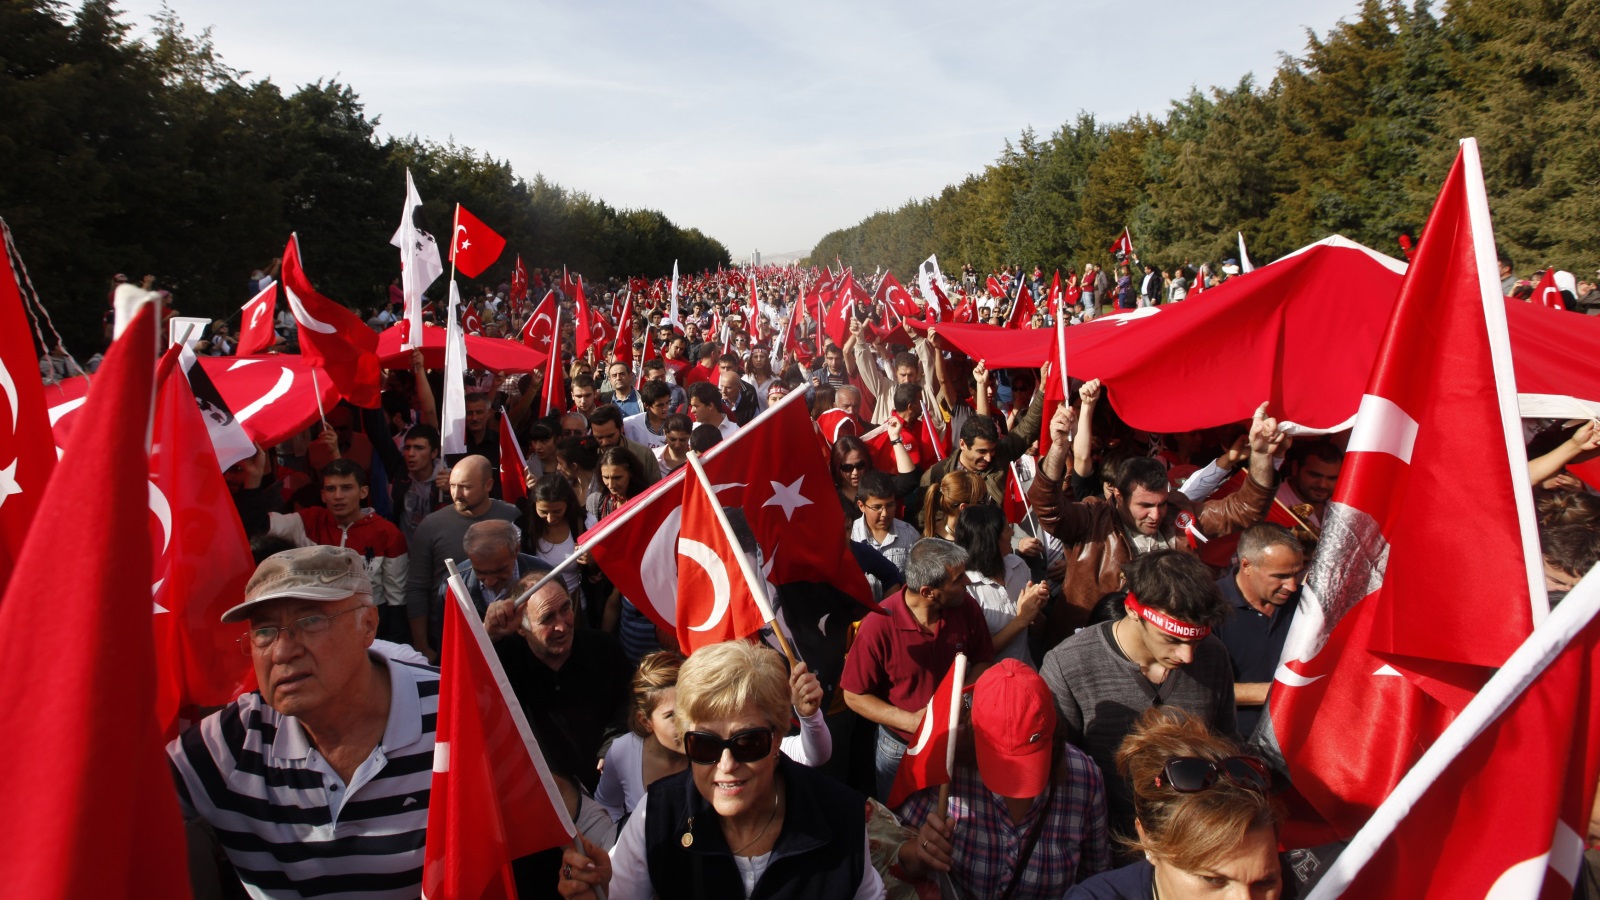 كان الرأي العام التركي، بما في ذلك كثيرين من المنتمين للعدالة والتنمية، معارضًا للخطط الأميركية، تمامًا كما كانت القيادات في الجيش التركي